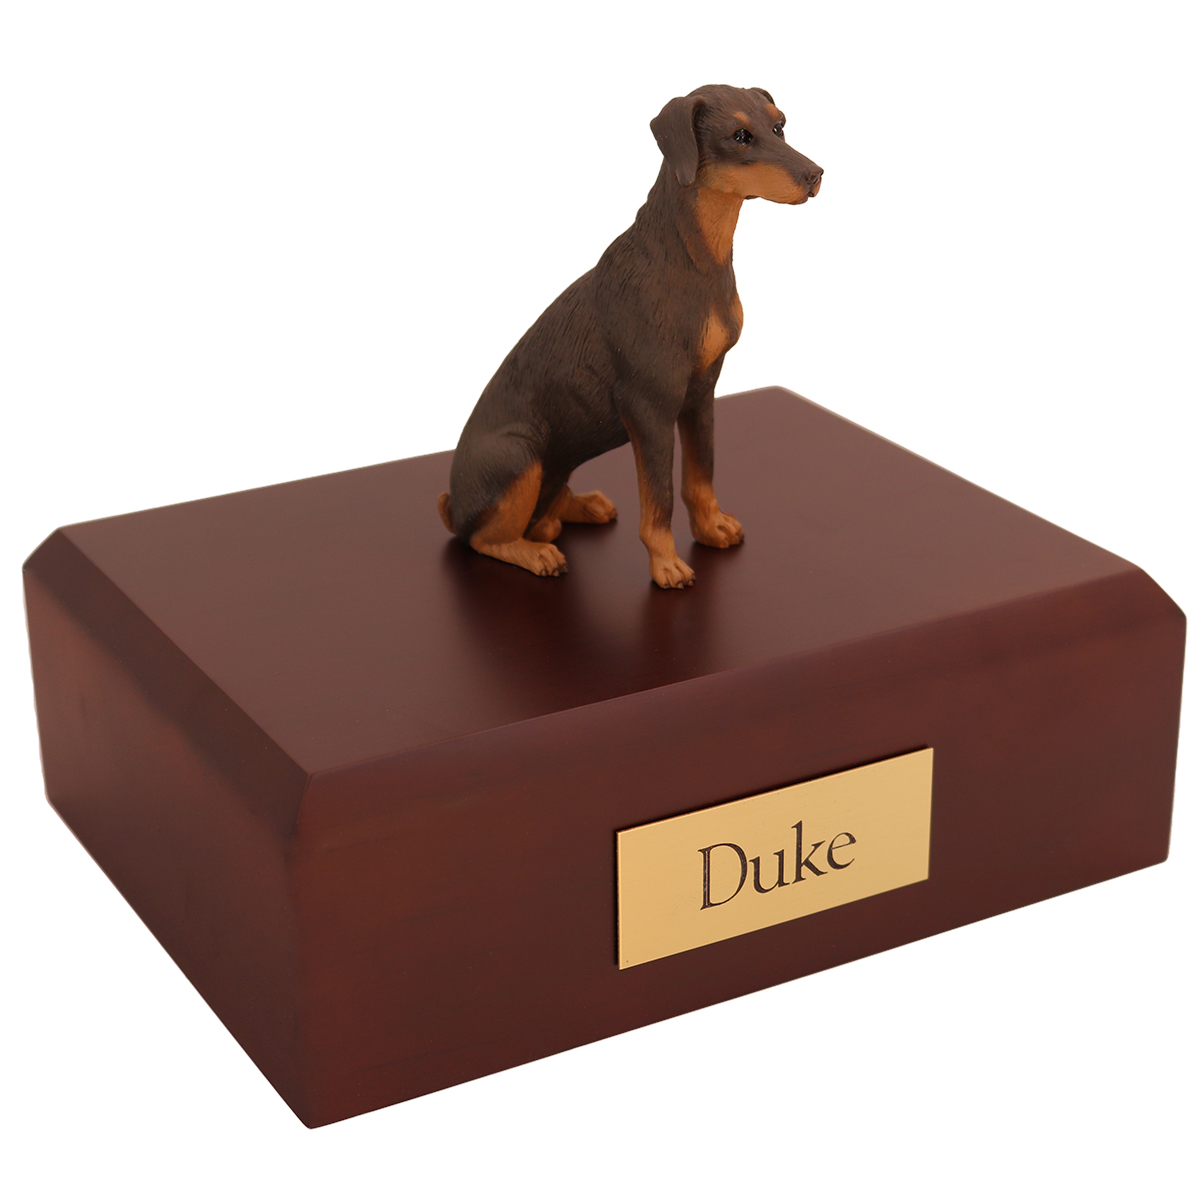 Dog, Doberman, Red - ears down - Figurine Urn